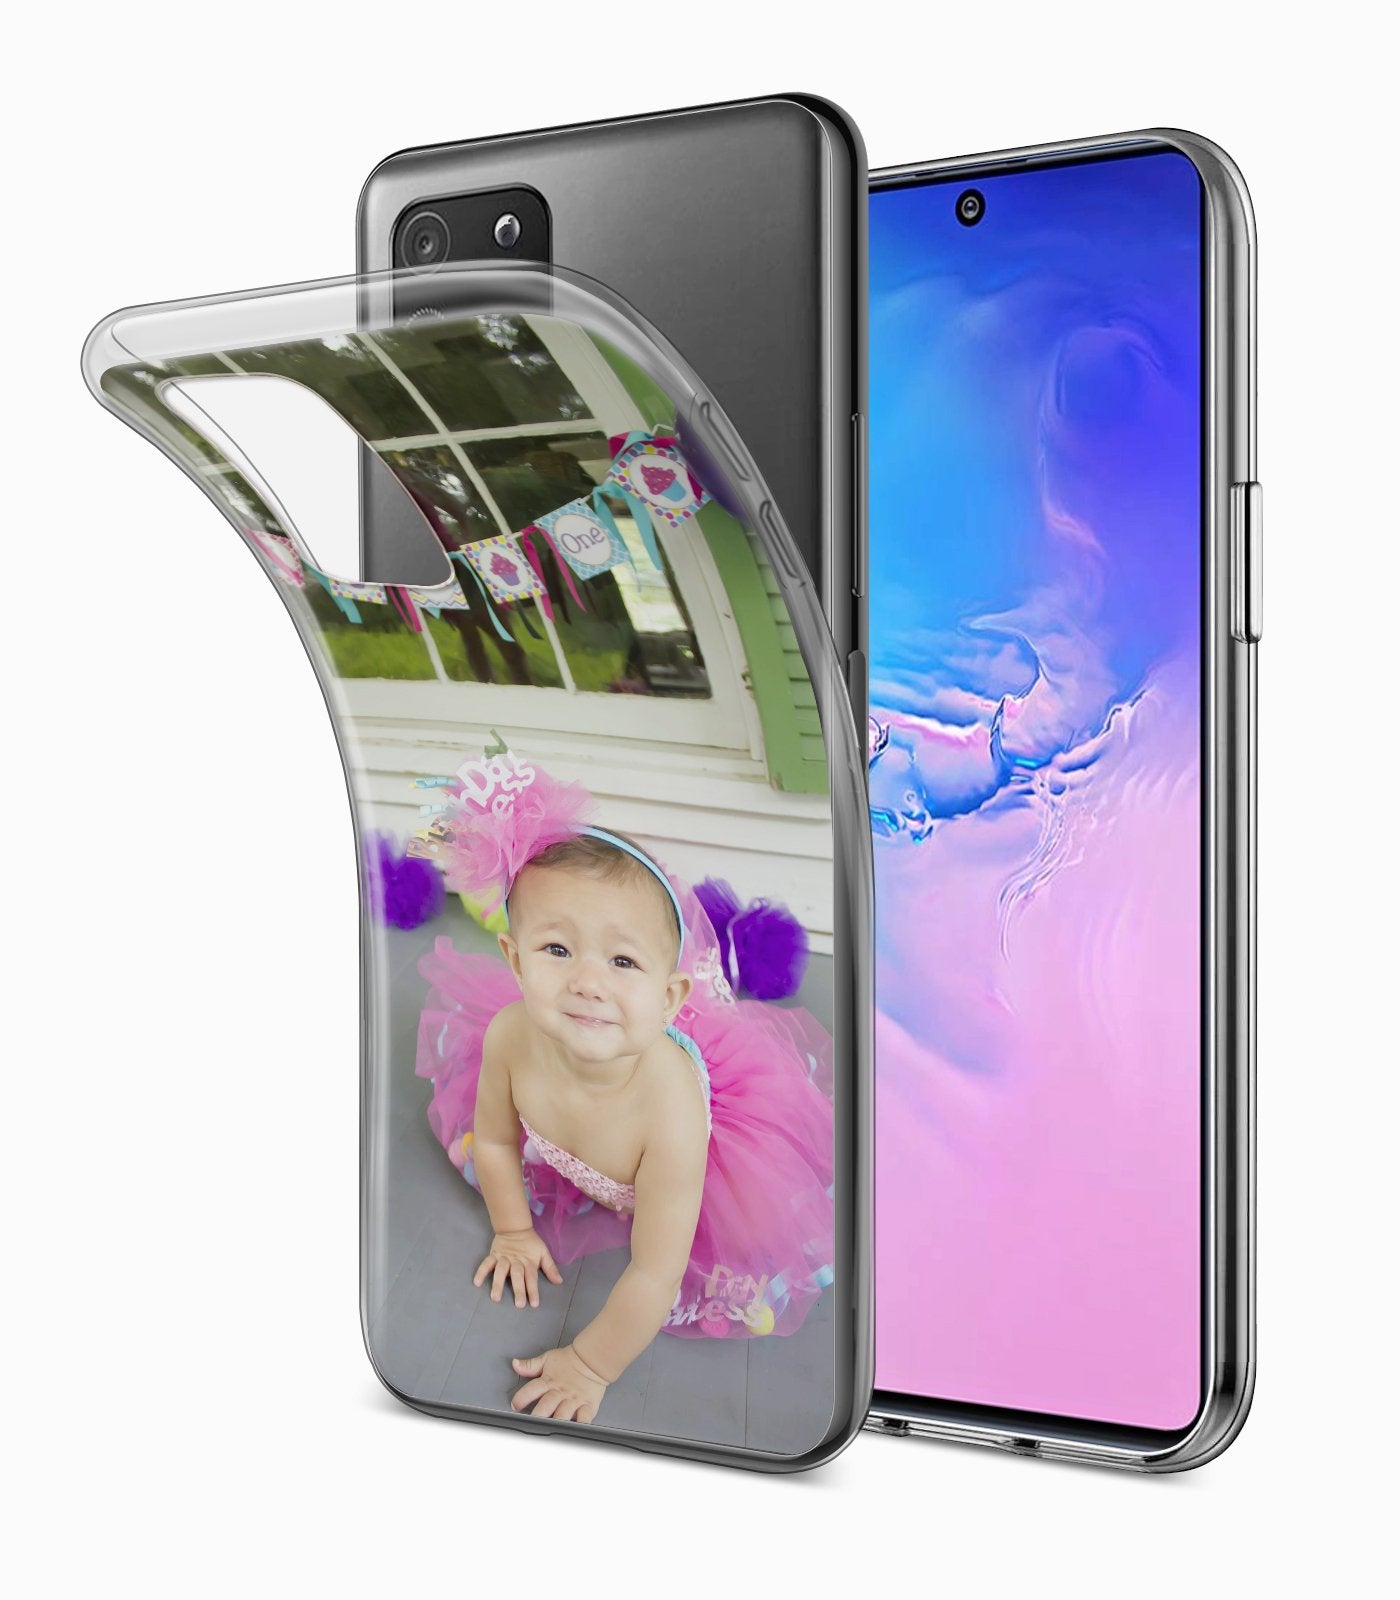 Samsung Galaxy S10 Lite Hülle personalisiert